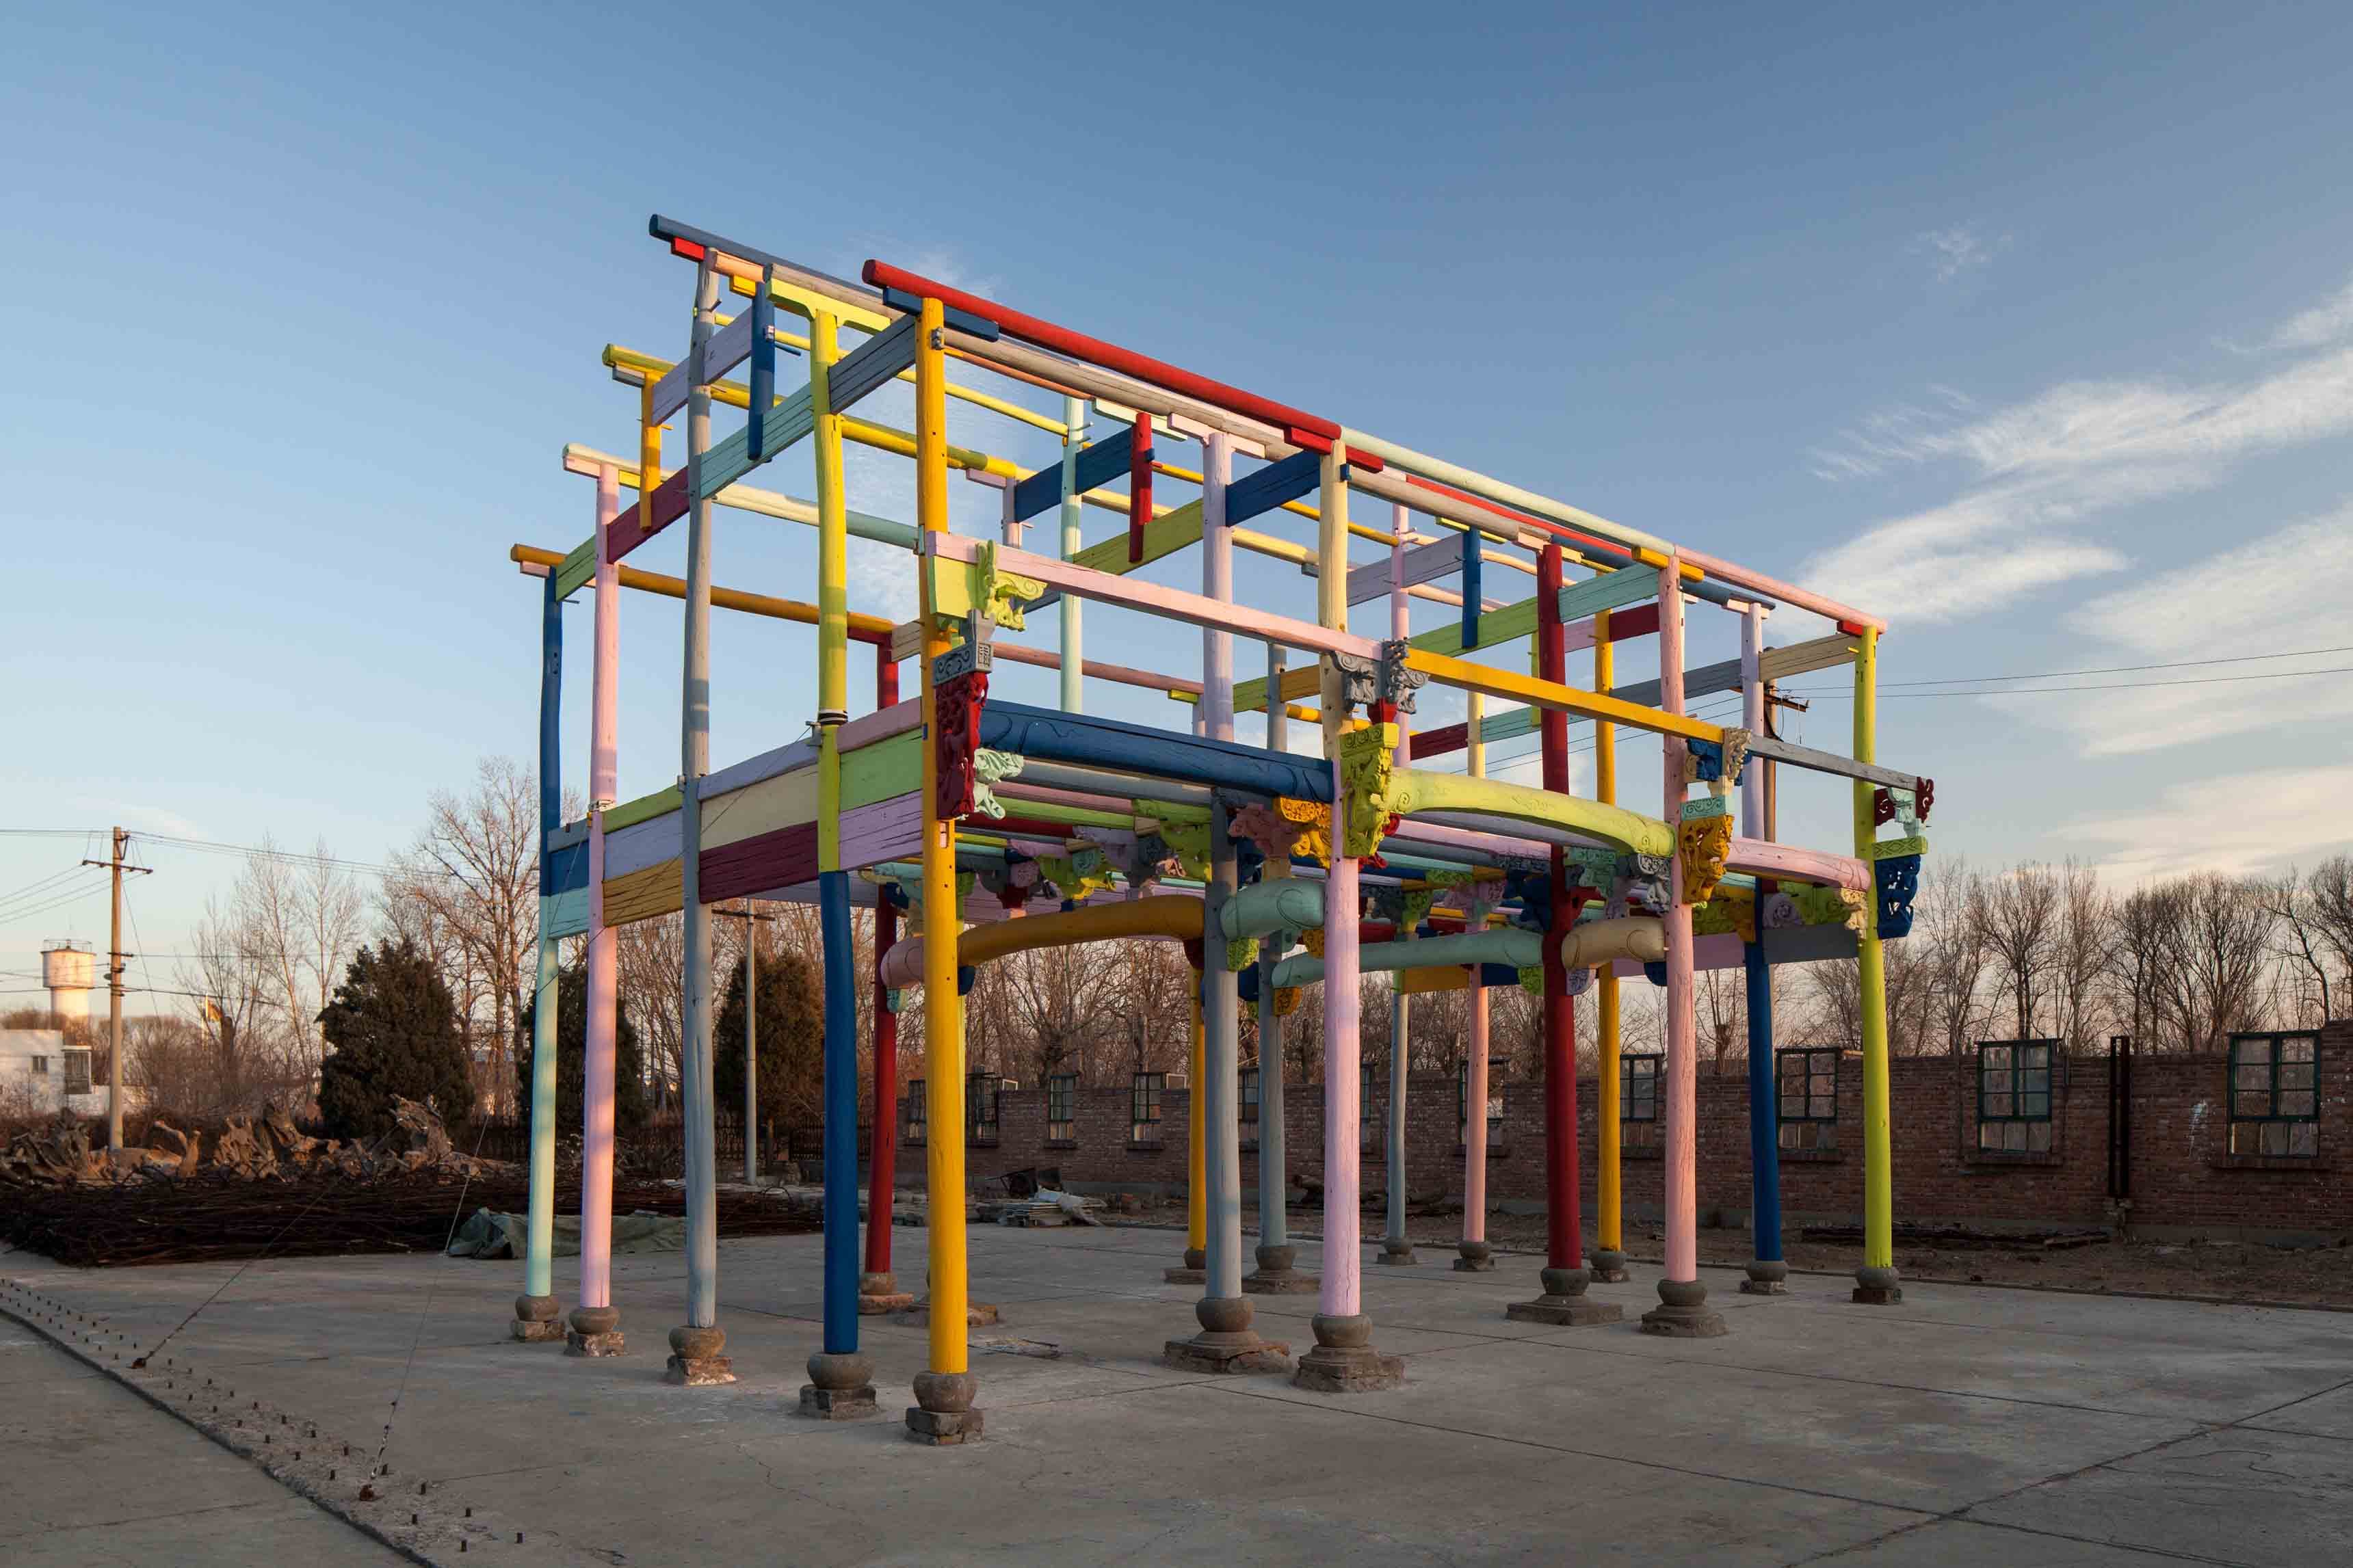 Ai Weiwei, “Colored House” [Maison colorée] (2015) . Bois, peinture industrielle, verre, 1025 x 620 x 765 cm. © Image courtesy Ai Weiwei Studio